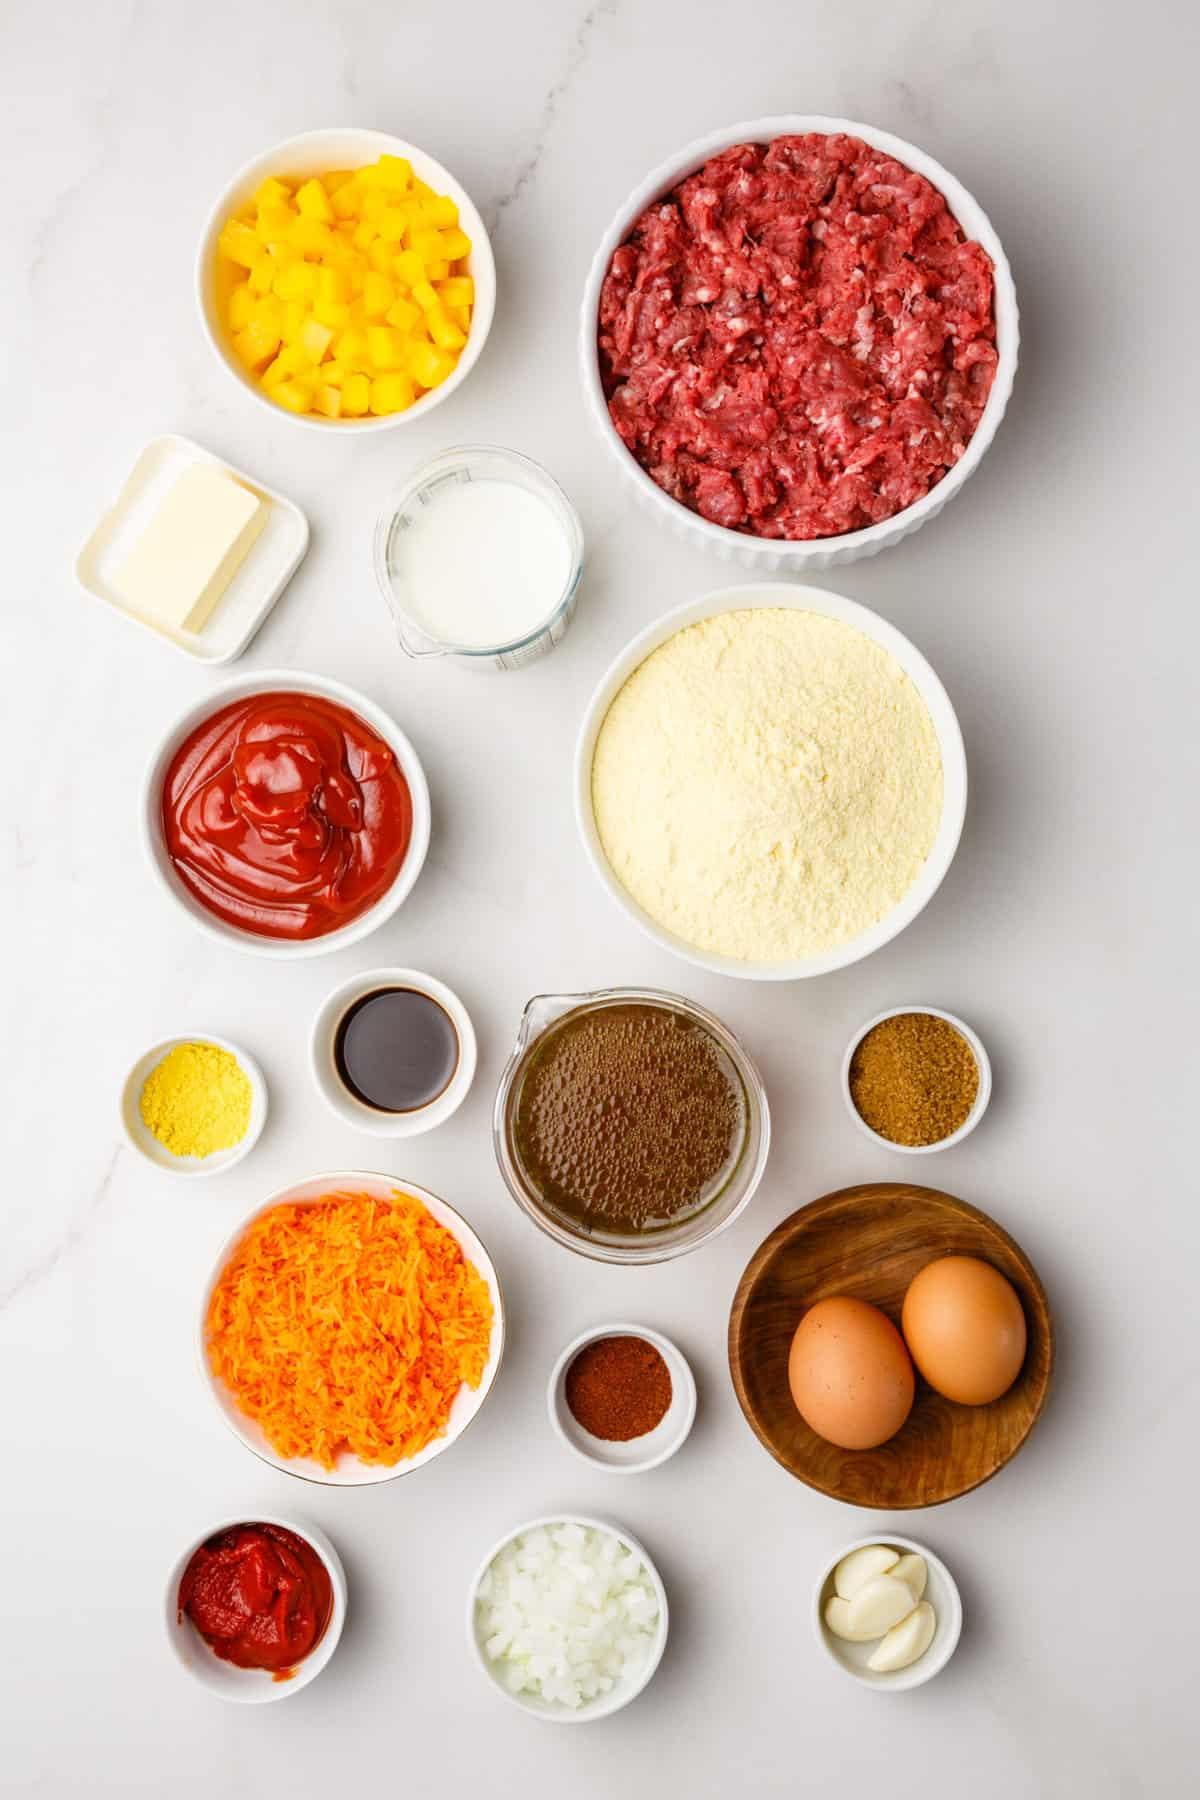 ingredients to make sloppy joe casserole